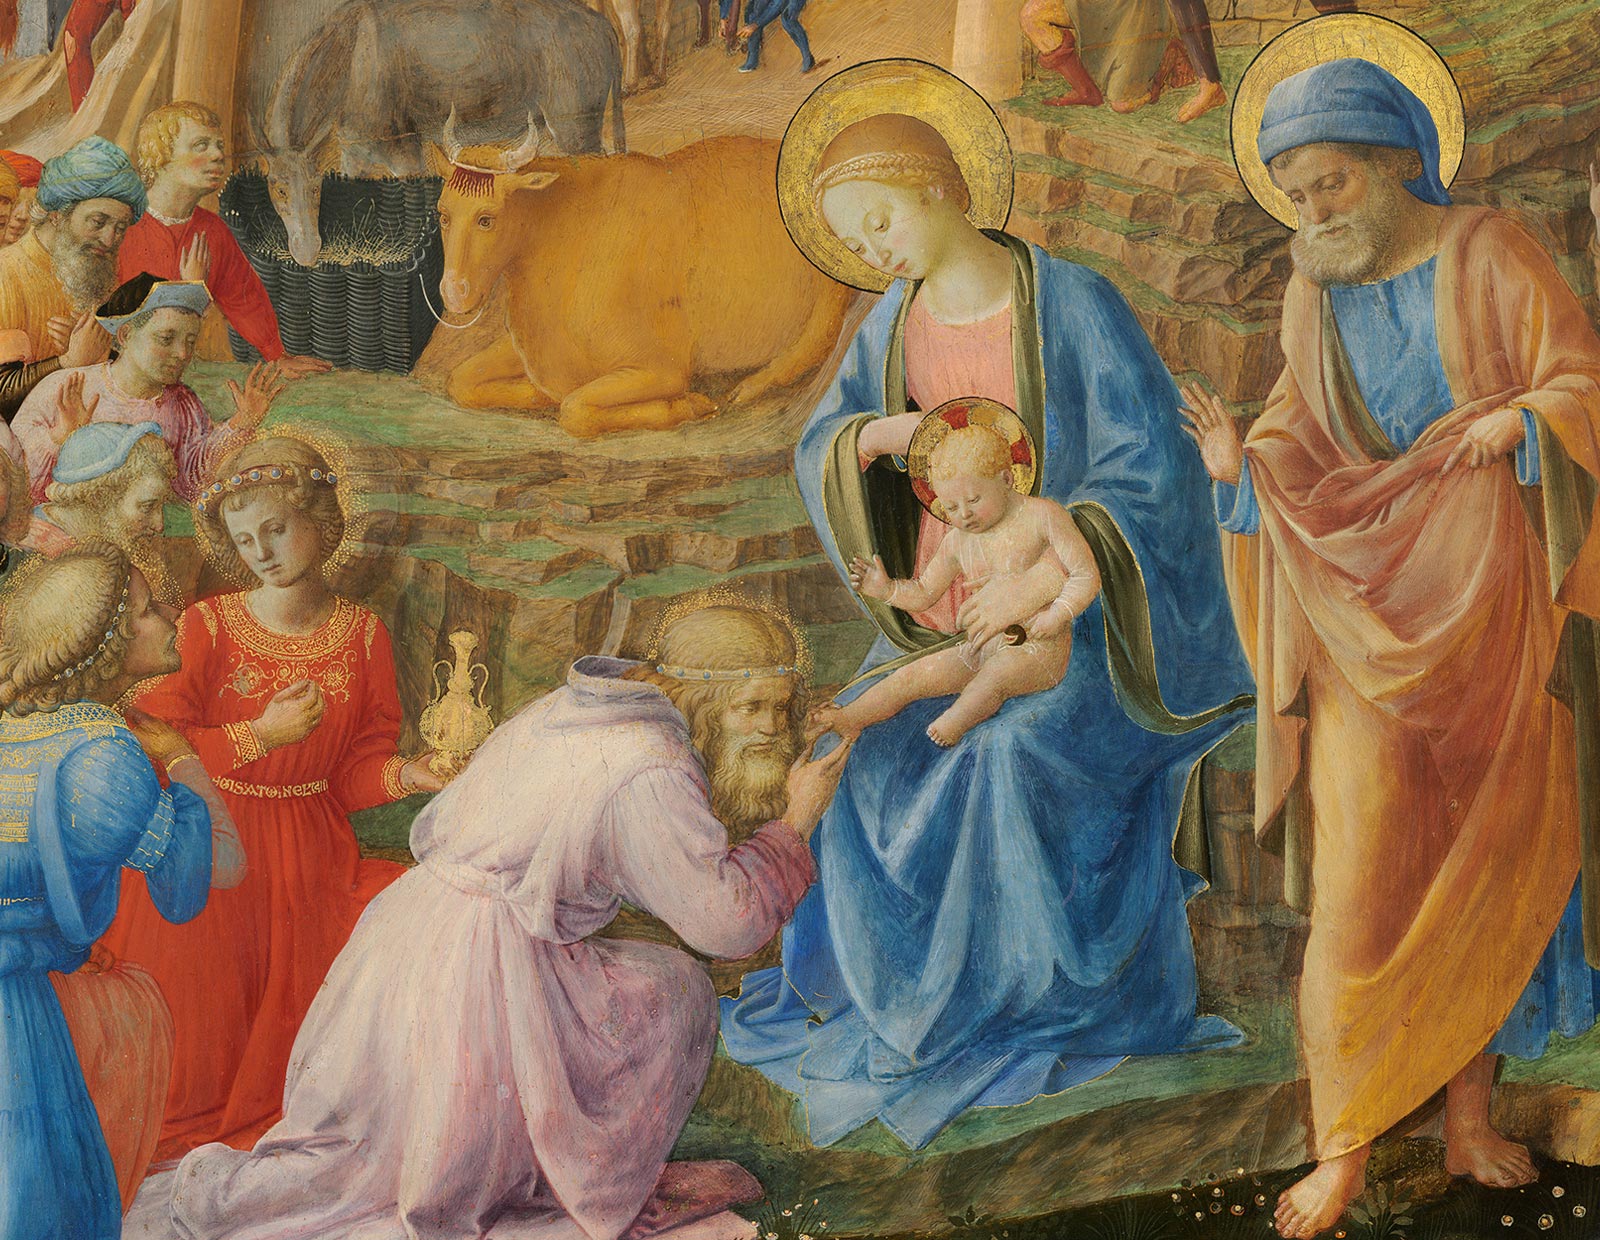 Fra Angelico, Fra Filippo Lippi, The Adoration of the Magi, c. 1440/1460